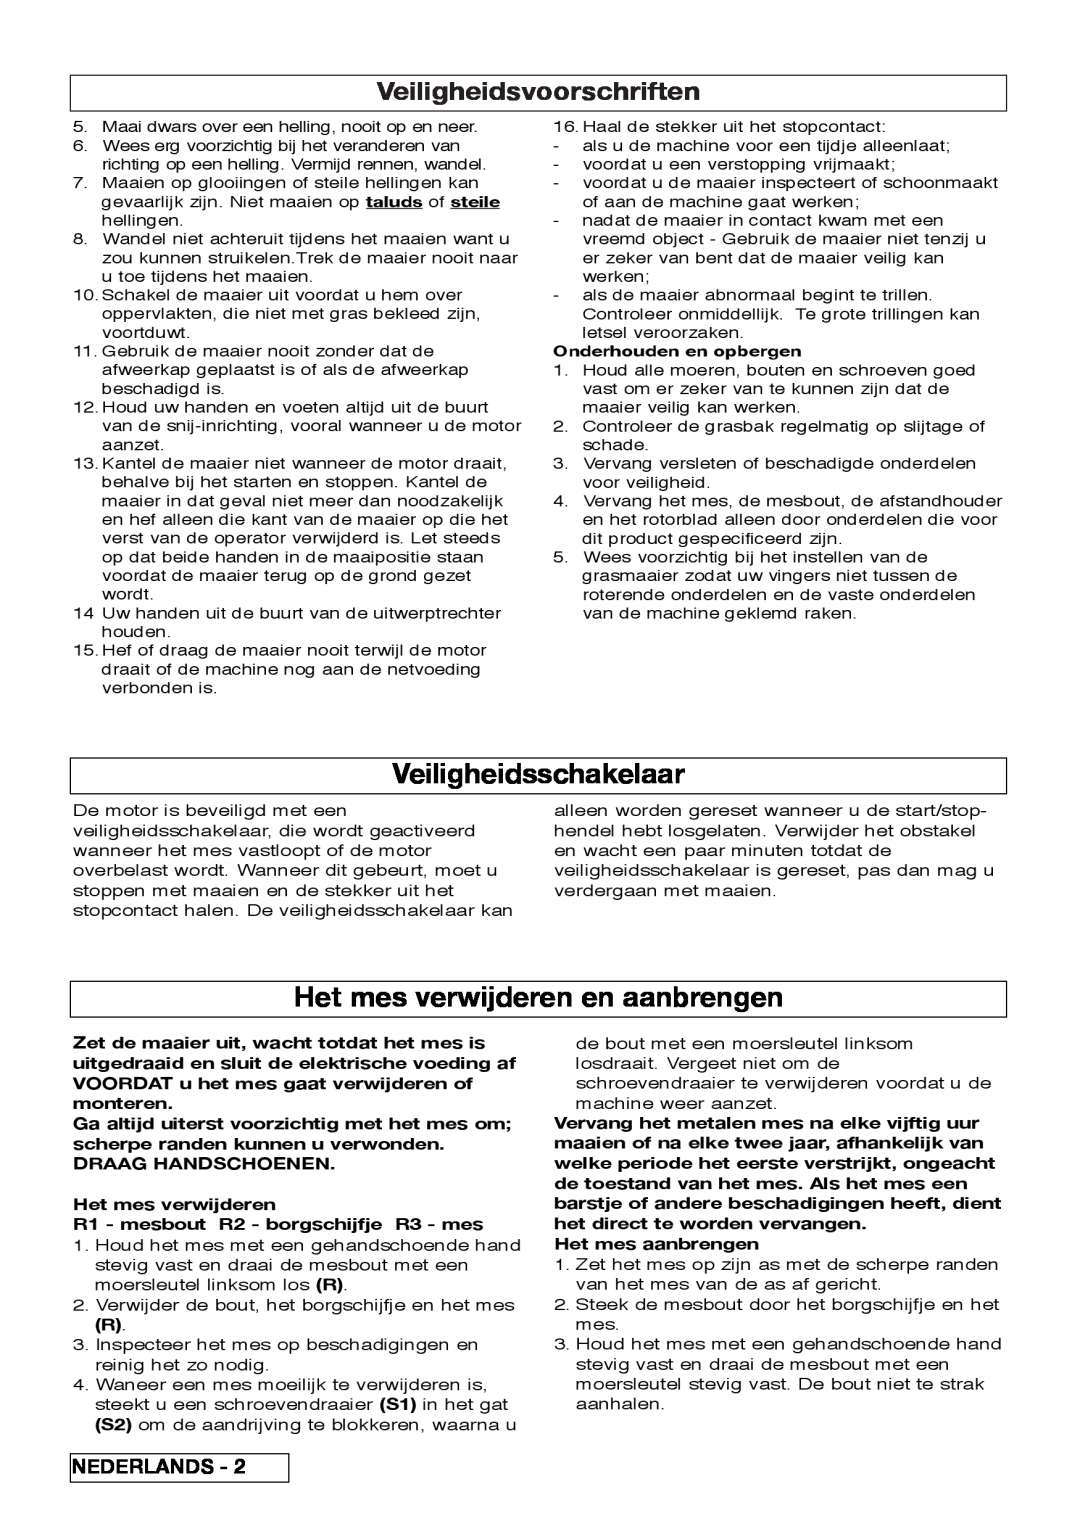 Flymo VM032 manual Veiligheidsschakelaar, Het mes verwijderen en aanbrengen, Veiligheidsvoorschriften, Nederlands 